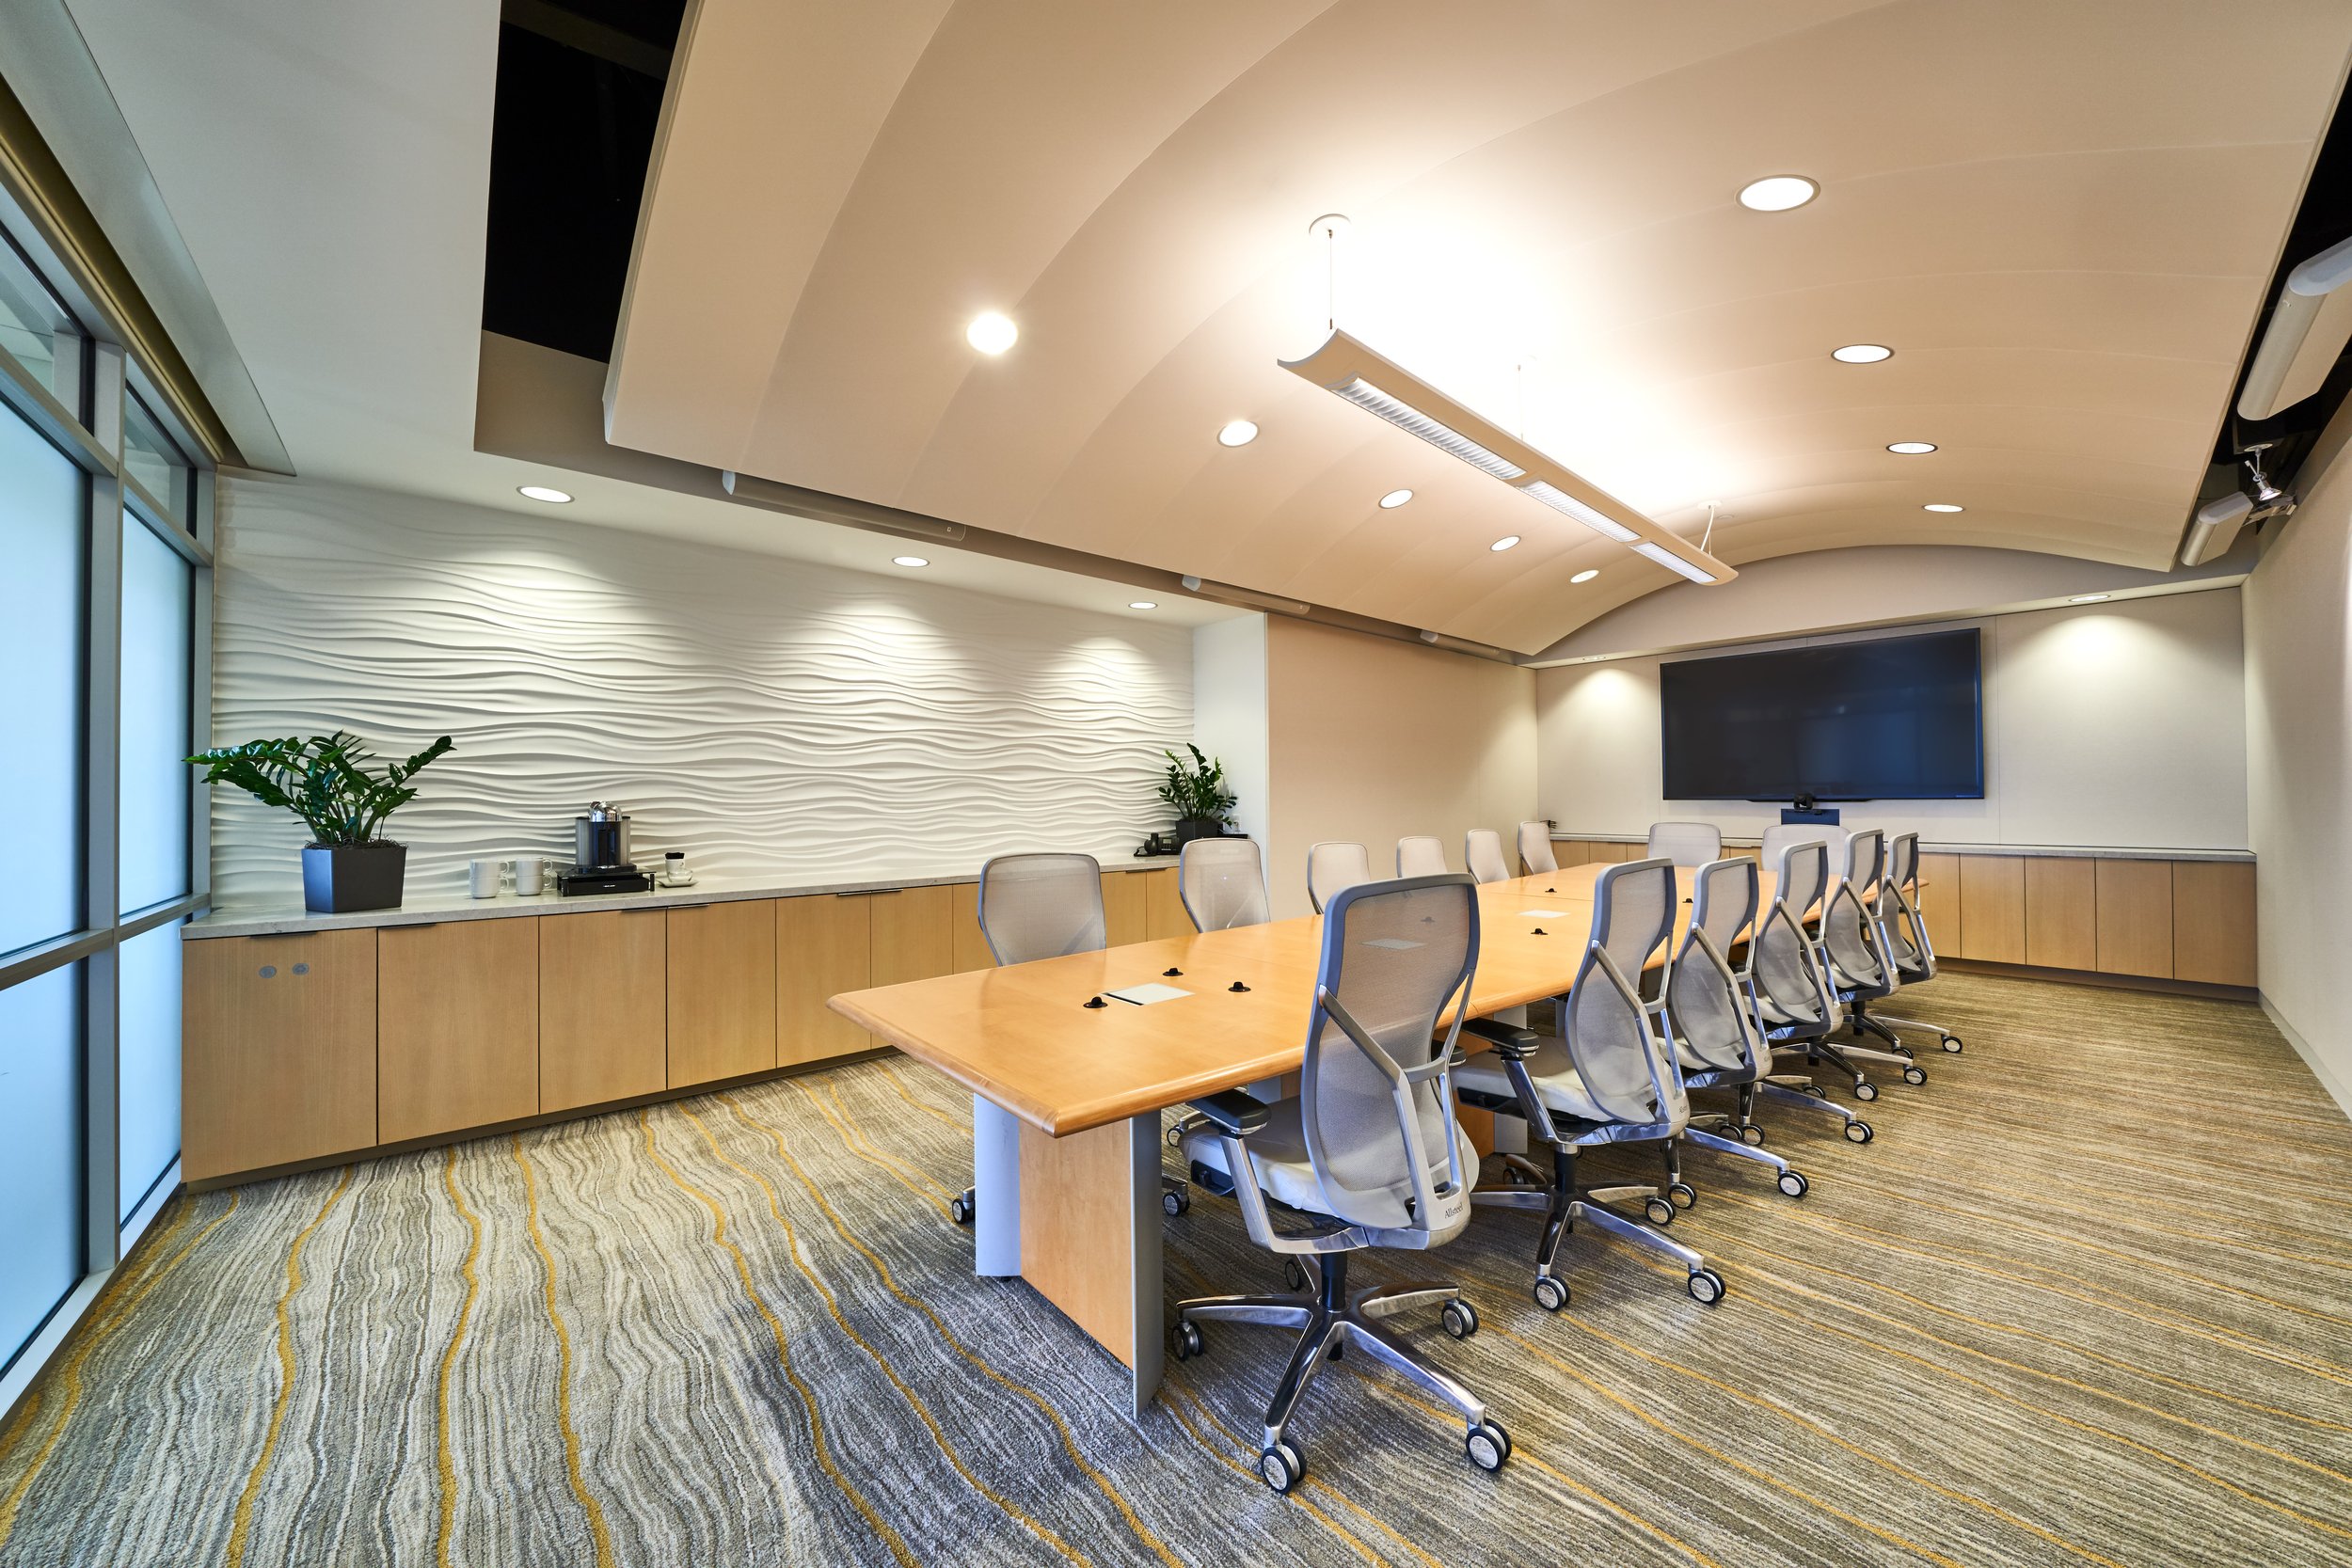 Law firm design_Barrel ceiling conference room-Vivo Design Studios.jpg